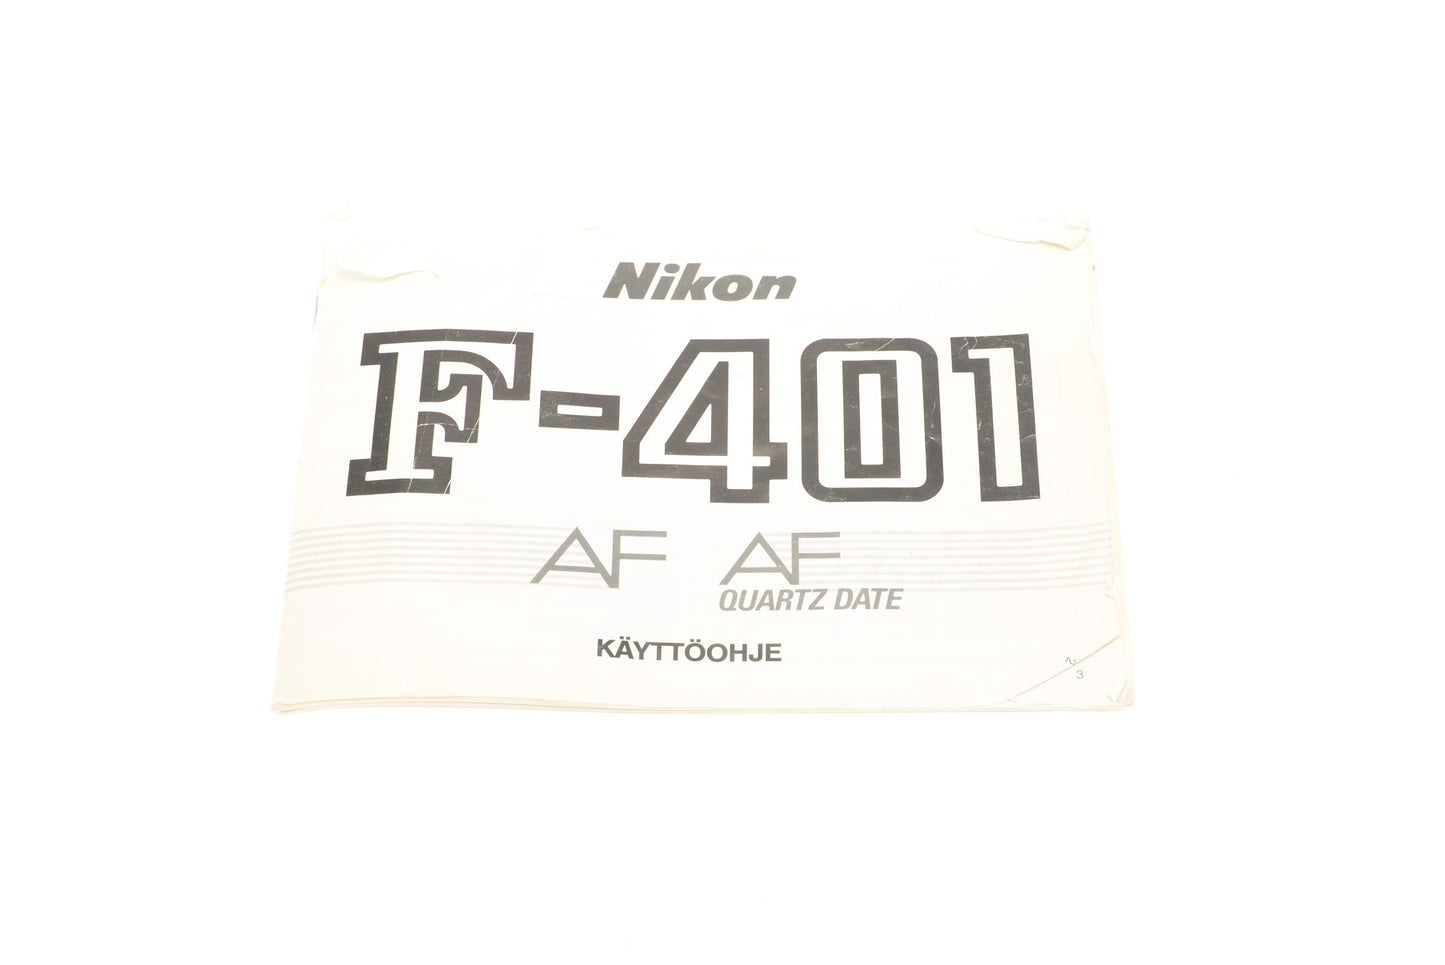 Nikon F-401 AF / AF Quartz Date Instructions - Accessory